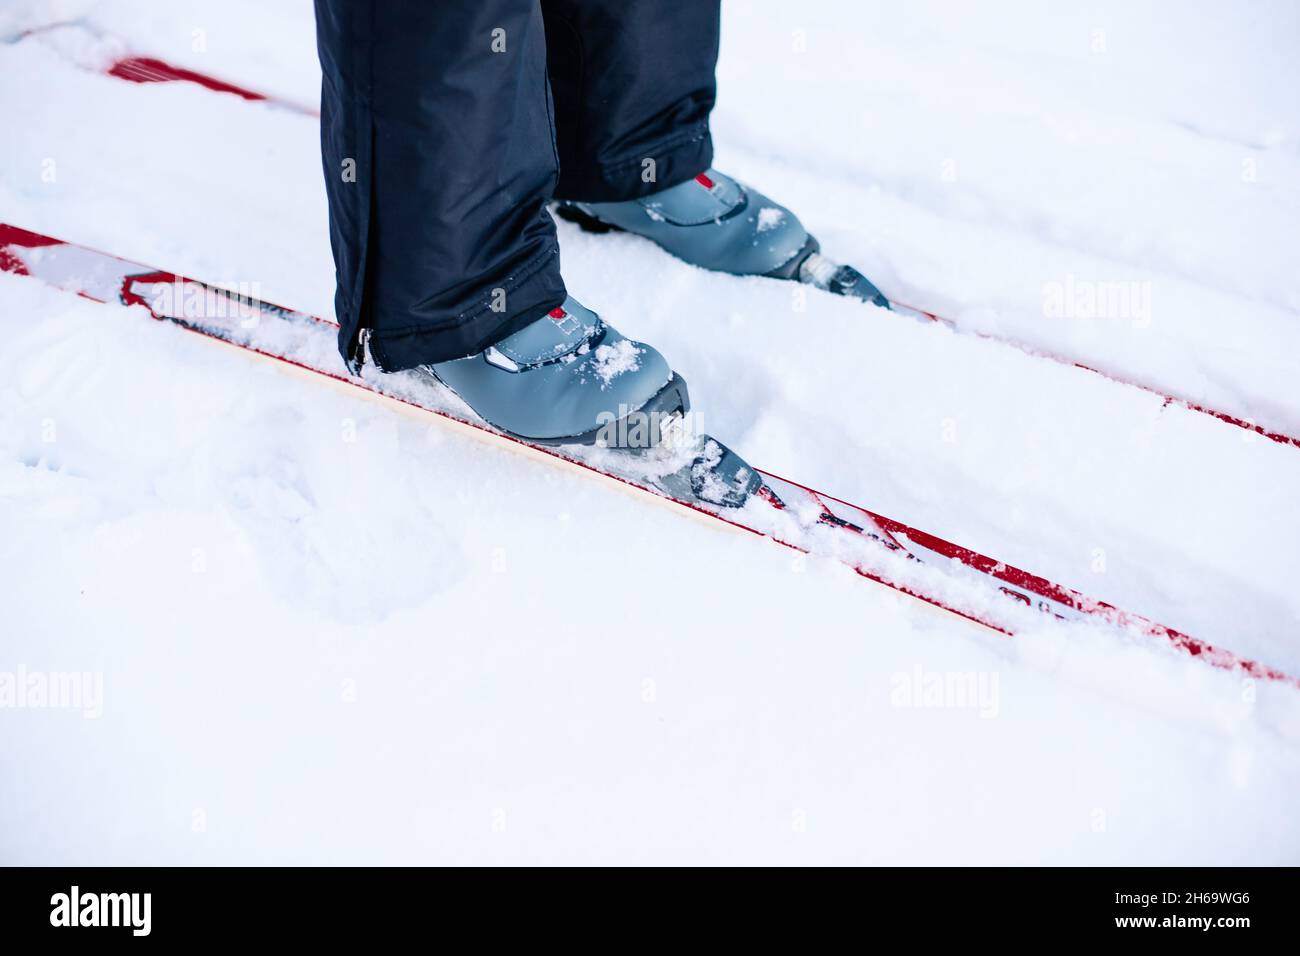 Gros plan des jambes avec des chaussures de ski grises sur les skis.Homme skier sur la neige d'hiver par beau temps, vue latérale Banque D'Images